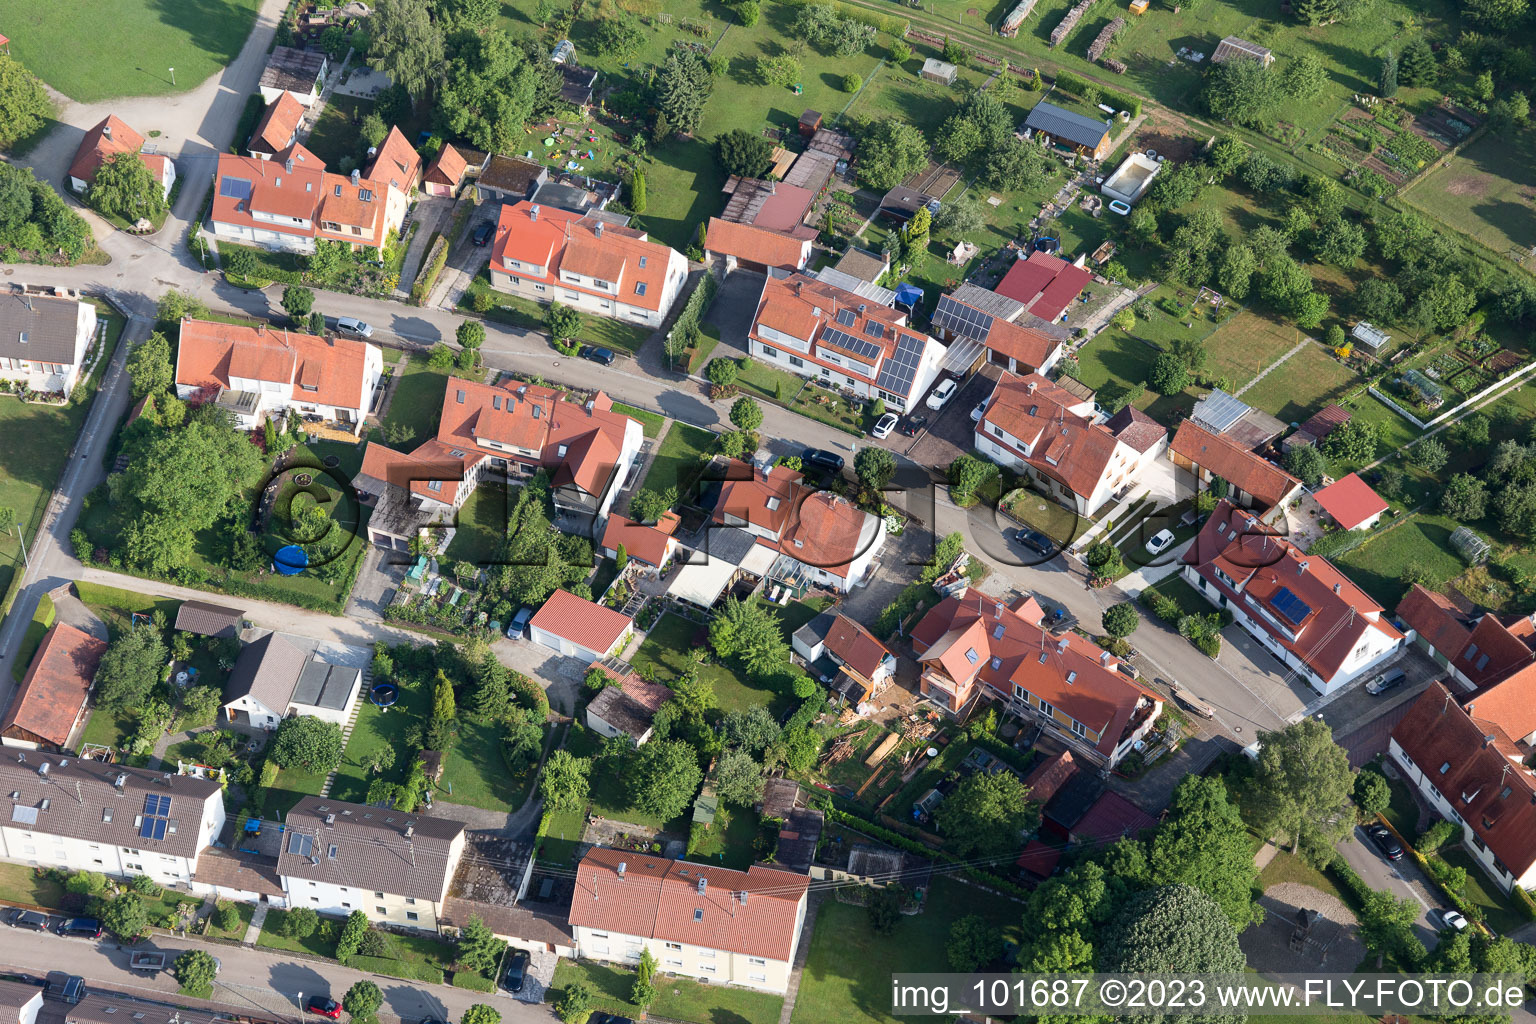 Riedlingen im Bundesland Bayern, Deutschland von einer Drohne aus